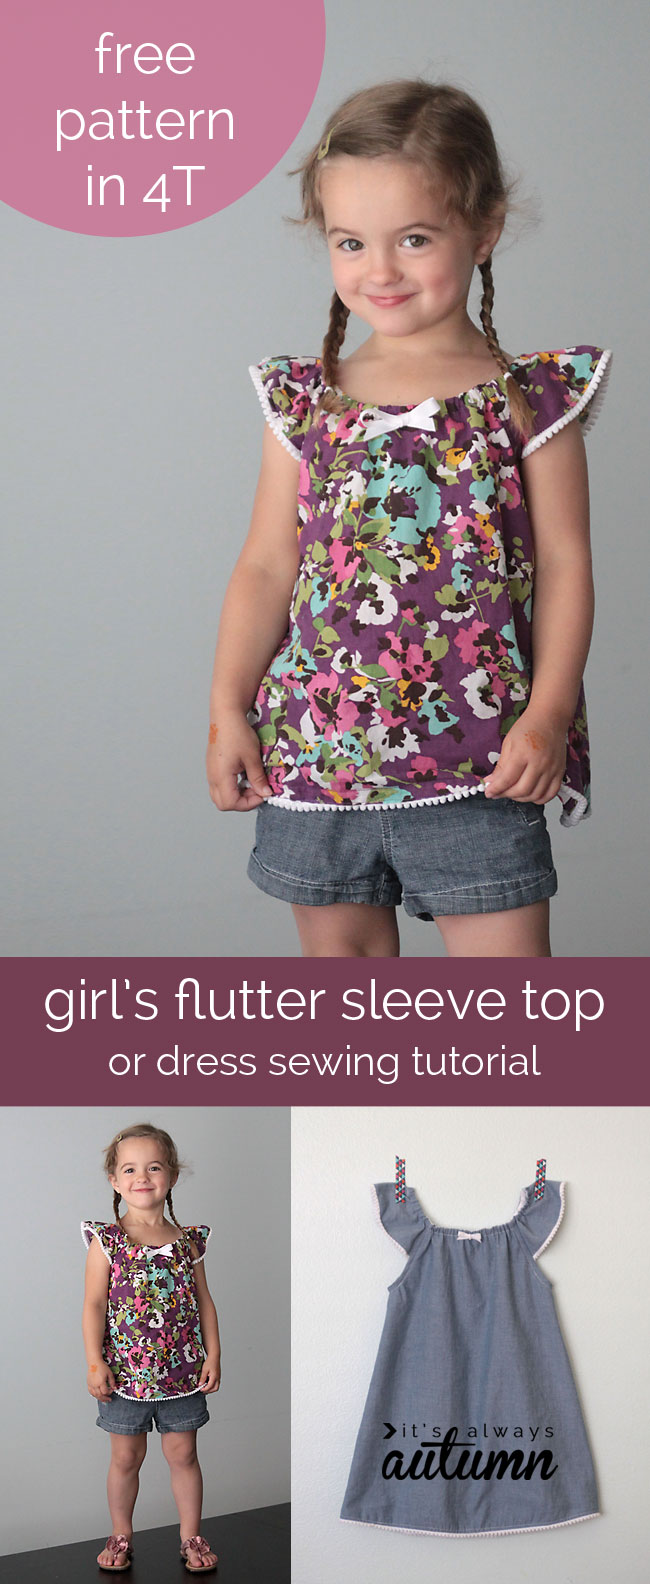 http://www.itsalwaysautumn.com/wp-content/uploads/2014/06/flutter-sleeve-dress-top-how-to-sew-girls-pattern.jpg